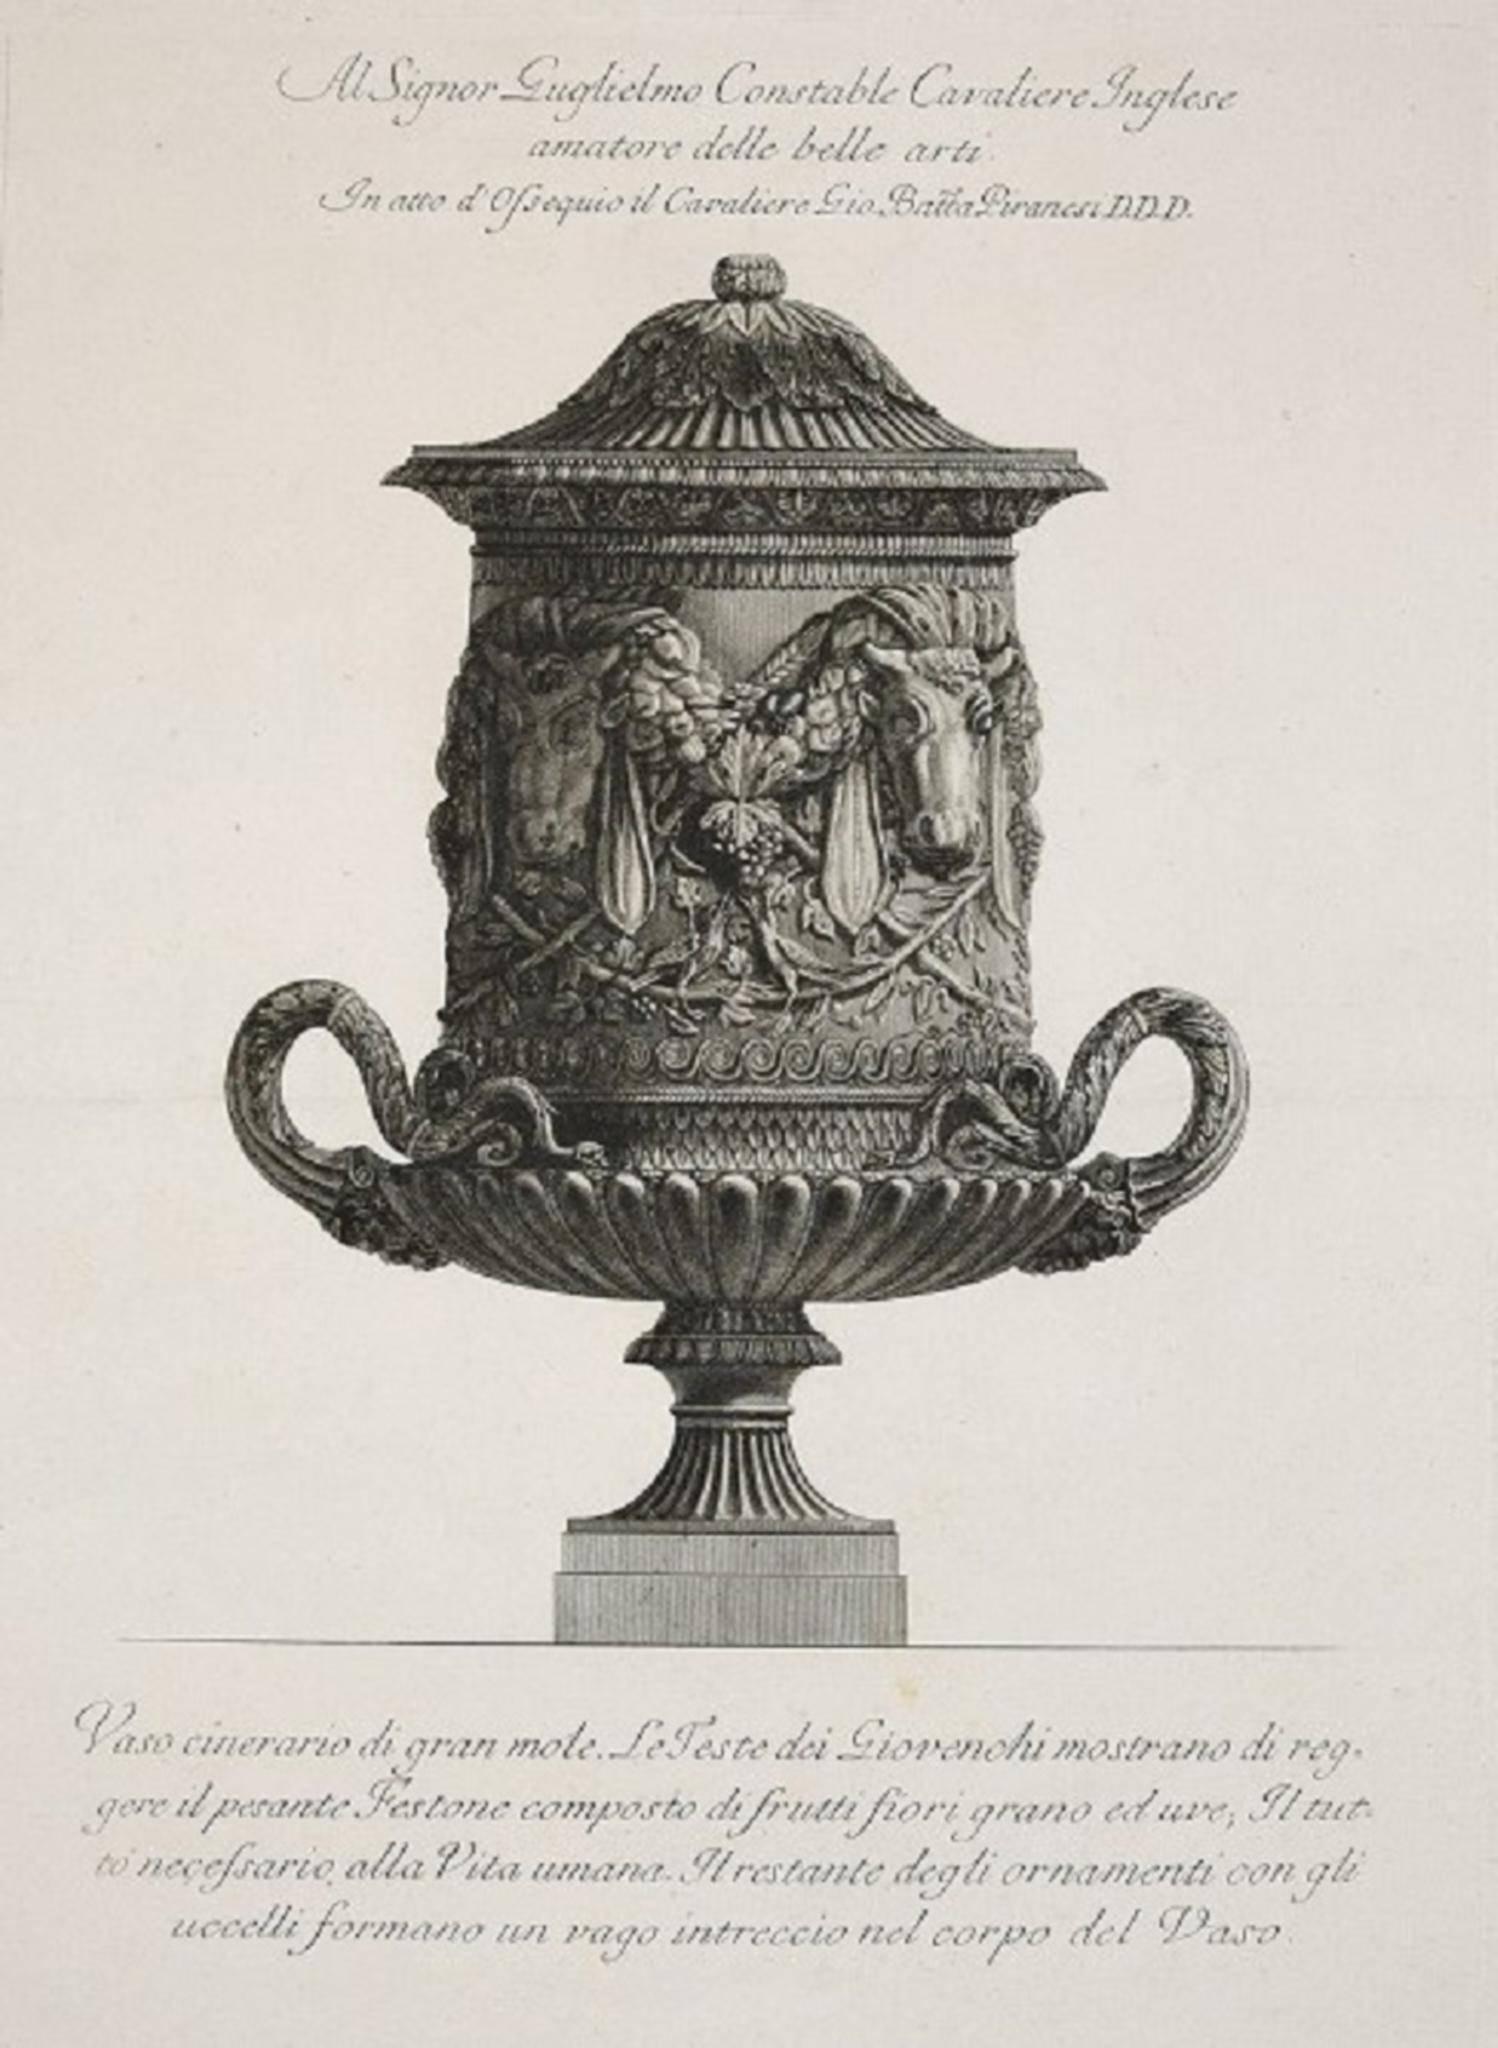 Vaso Cinerario di Gran Mole, etching from "Vases, Candelabras, Grave,Stones..."